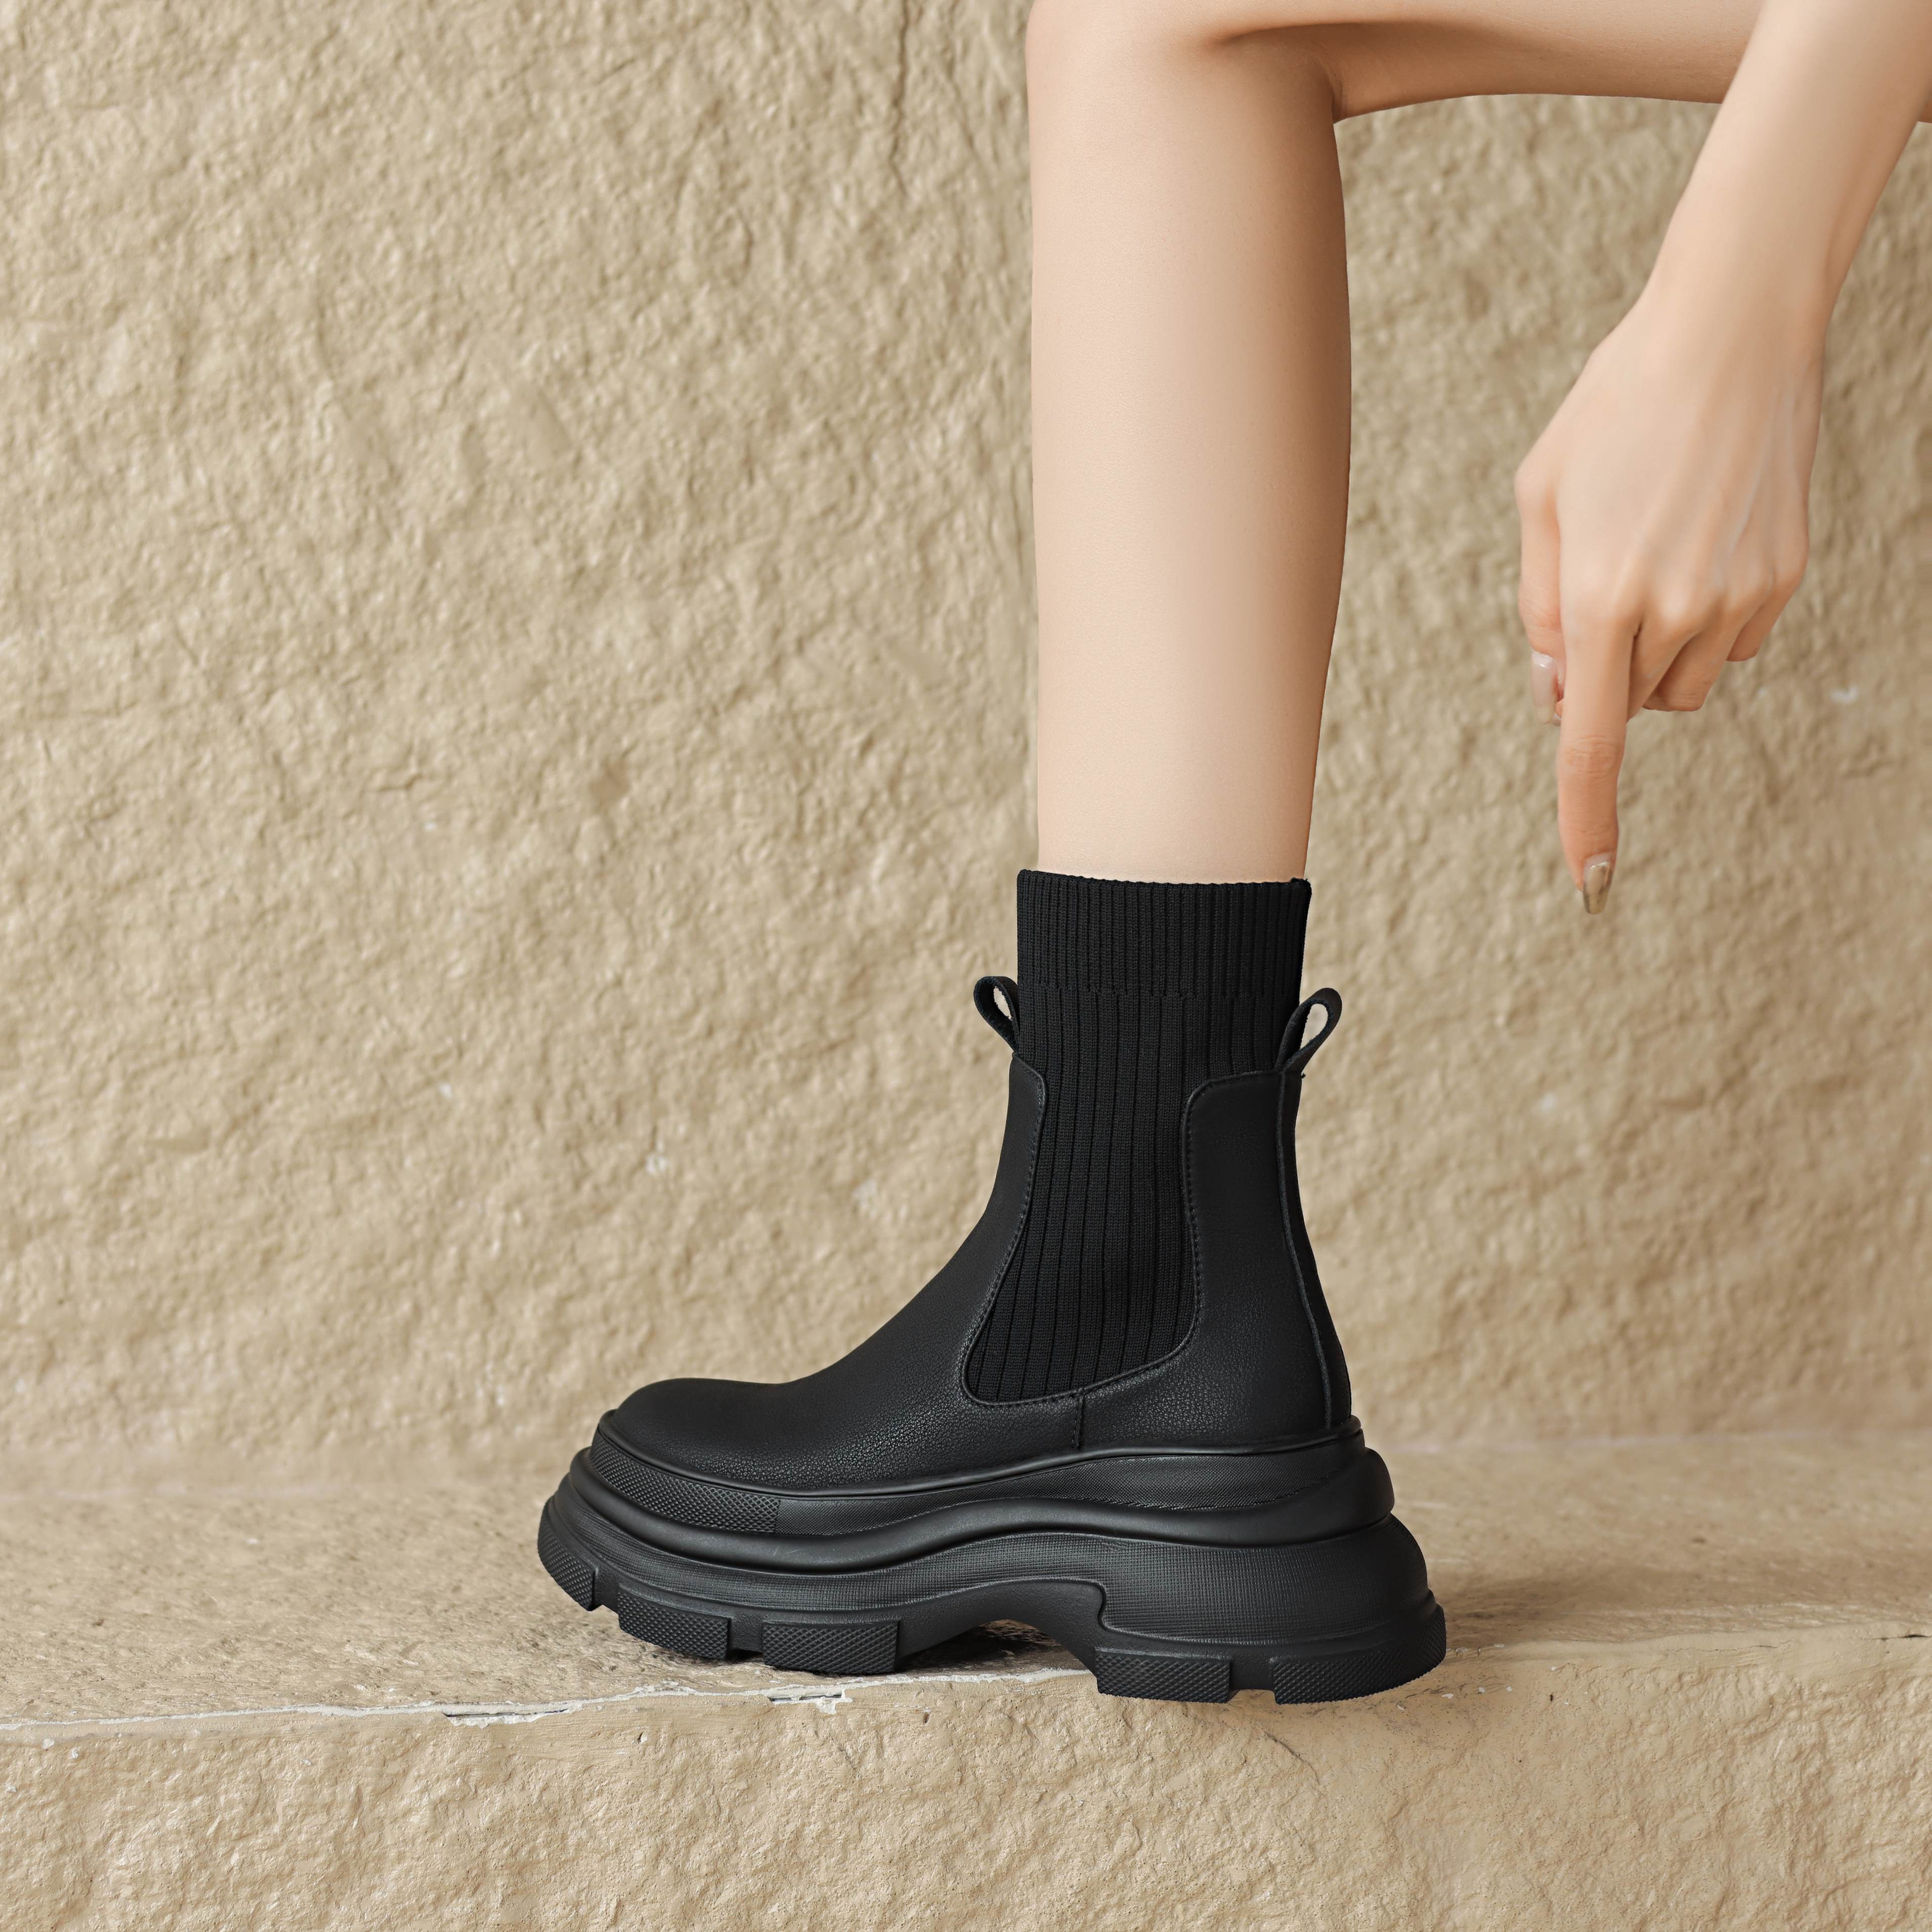 Autumn Boots Color Black Size 5.5 for Women